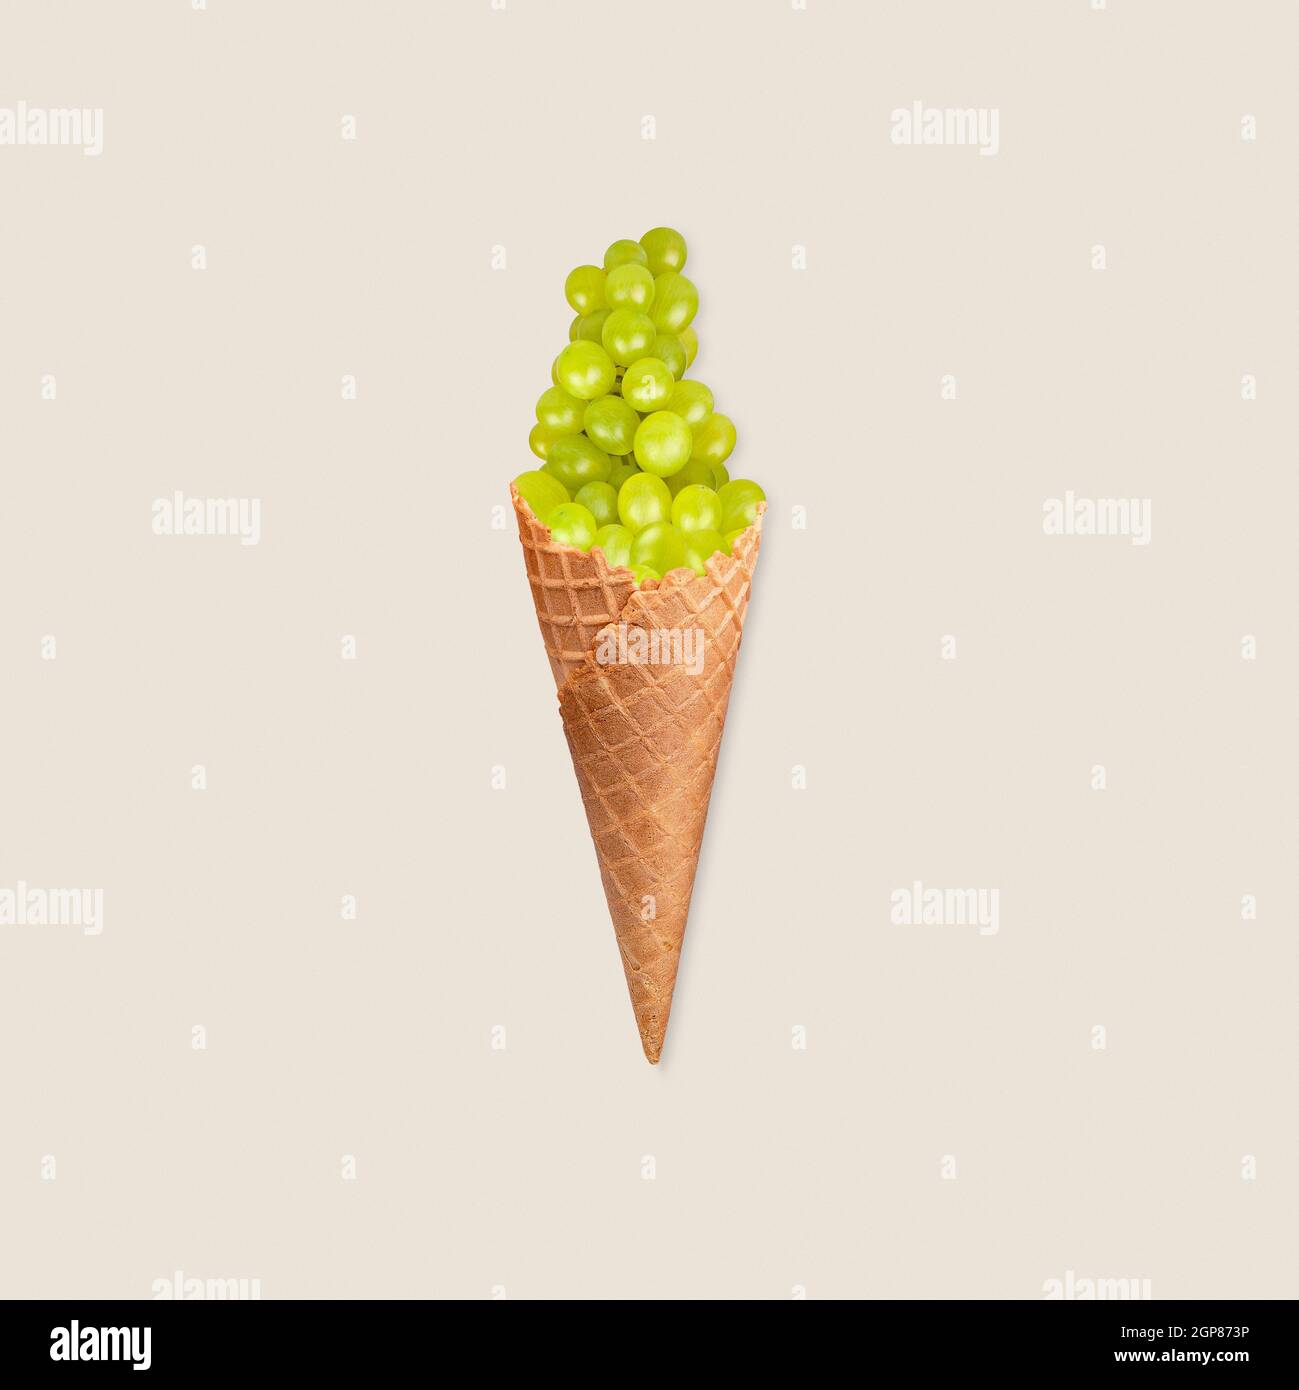 Concetto di alimentazione sana con manipolazione fotografica del gelato all'uva verde su sfondo pastello Foto Stock